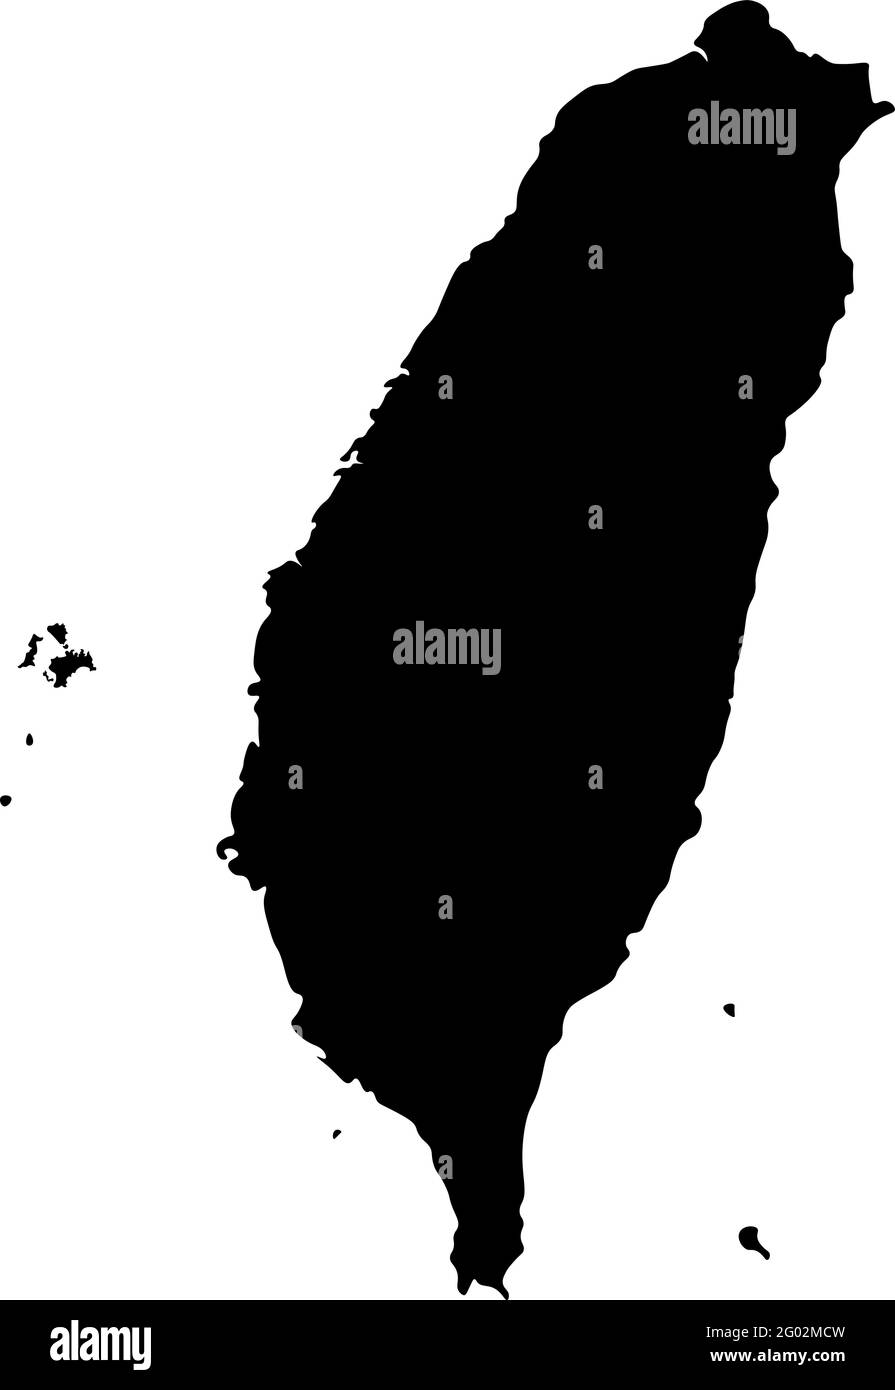 Vektor-flache Abbildung mit Karte von Taiwan (Republik China) in schwarz gefärbt. Isoliertes Konzept Stock Vektor